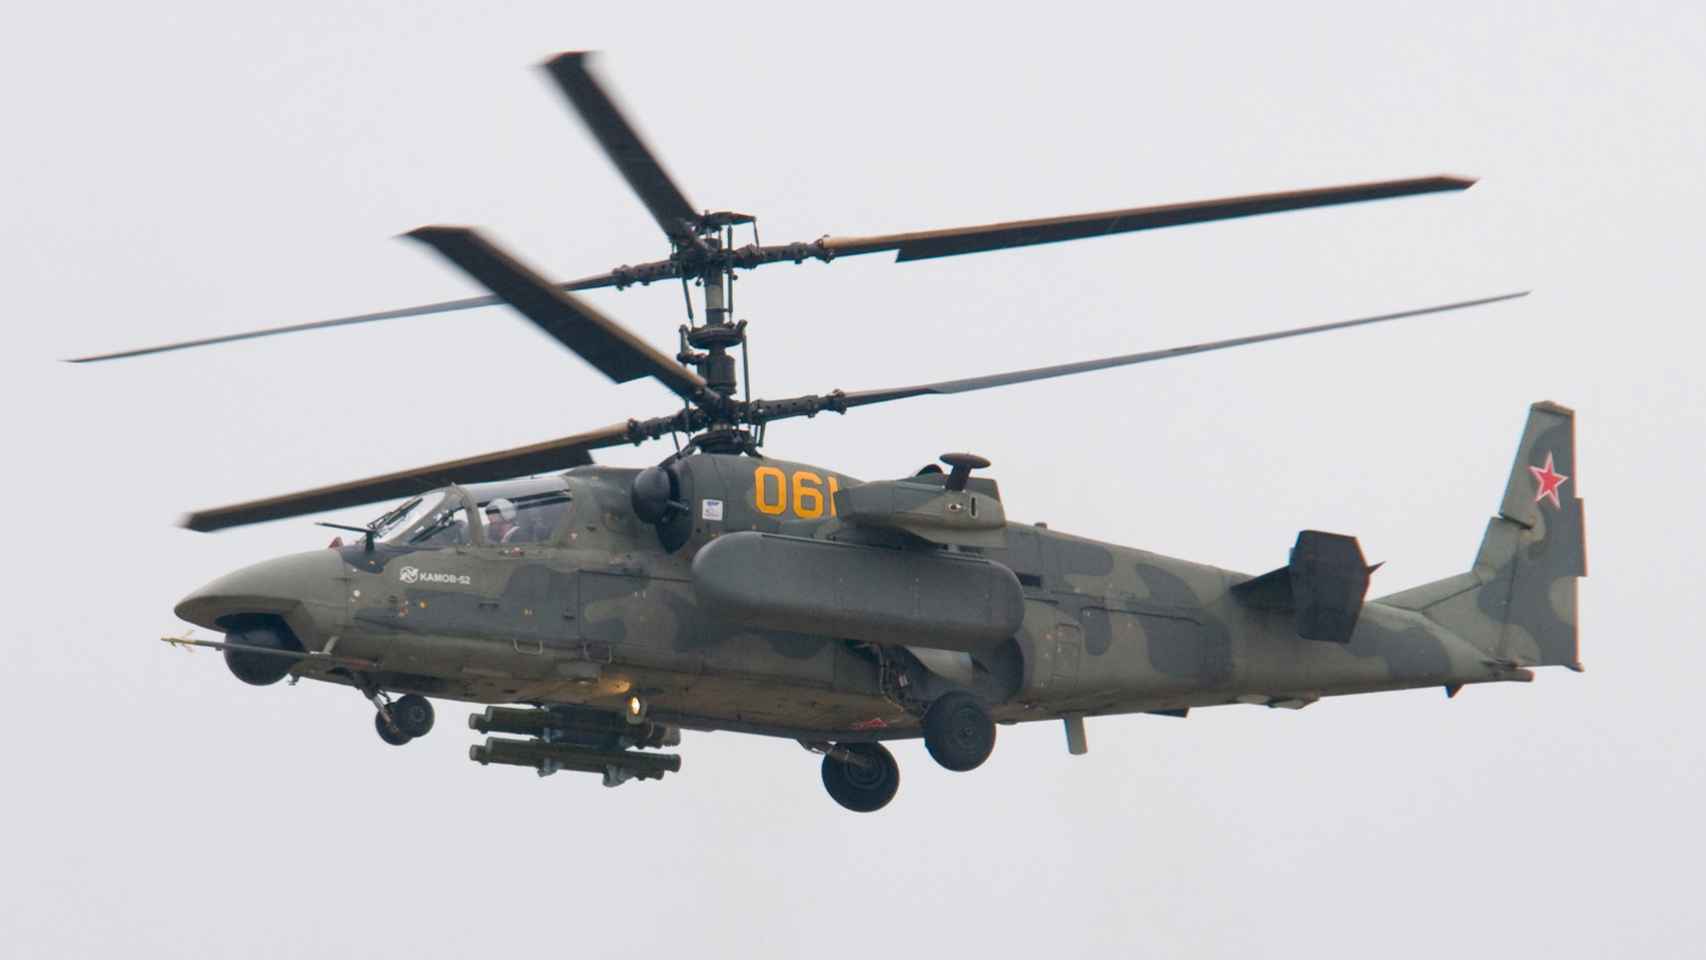 Helicóptero Kamov Ka-52, el posible modelo que aparece en el vídeo.